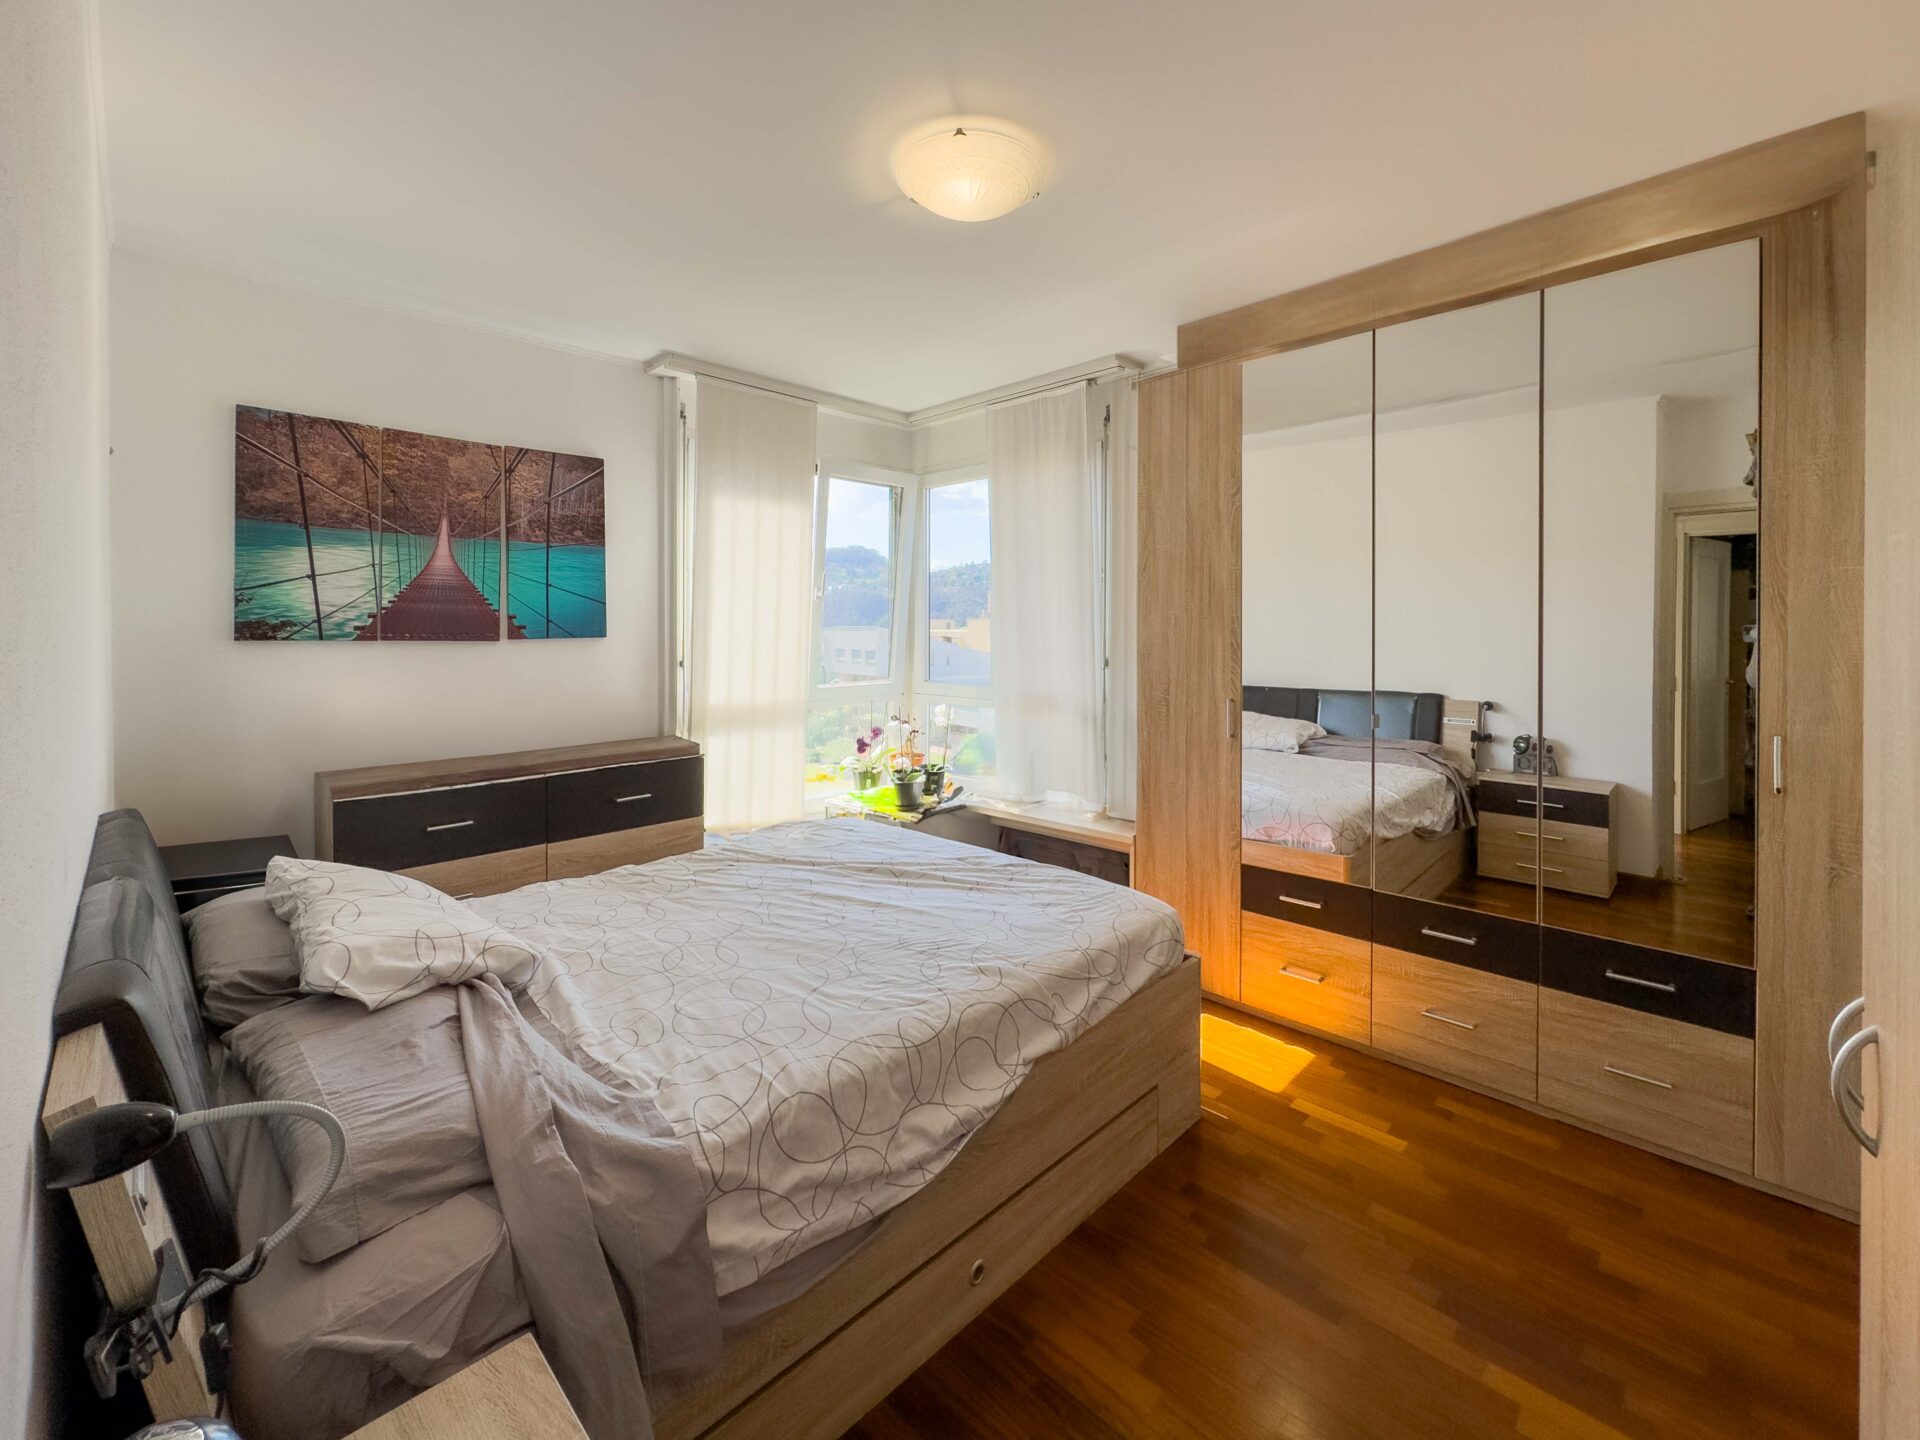 4,5-Zimmer-Wohnung in Paradiso in einer ruhigen Wohngegend zu verkaufen